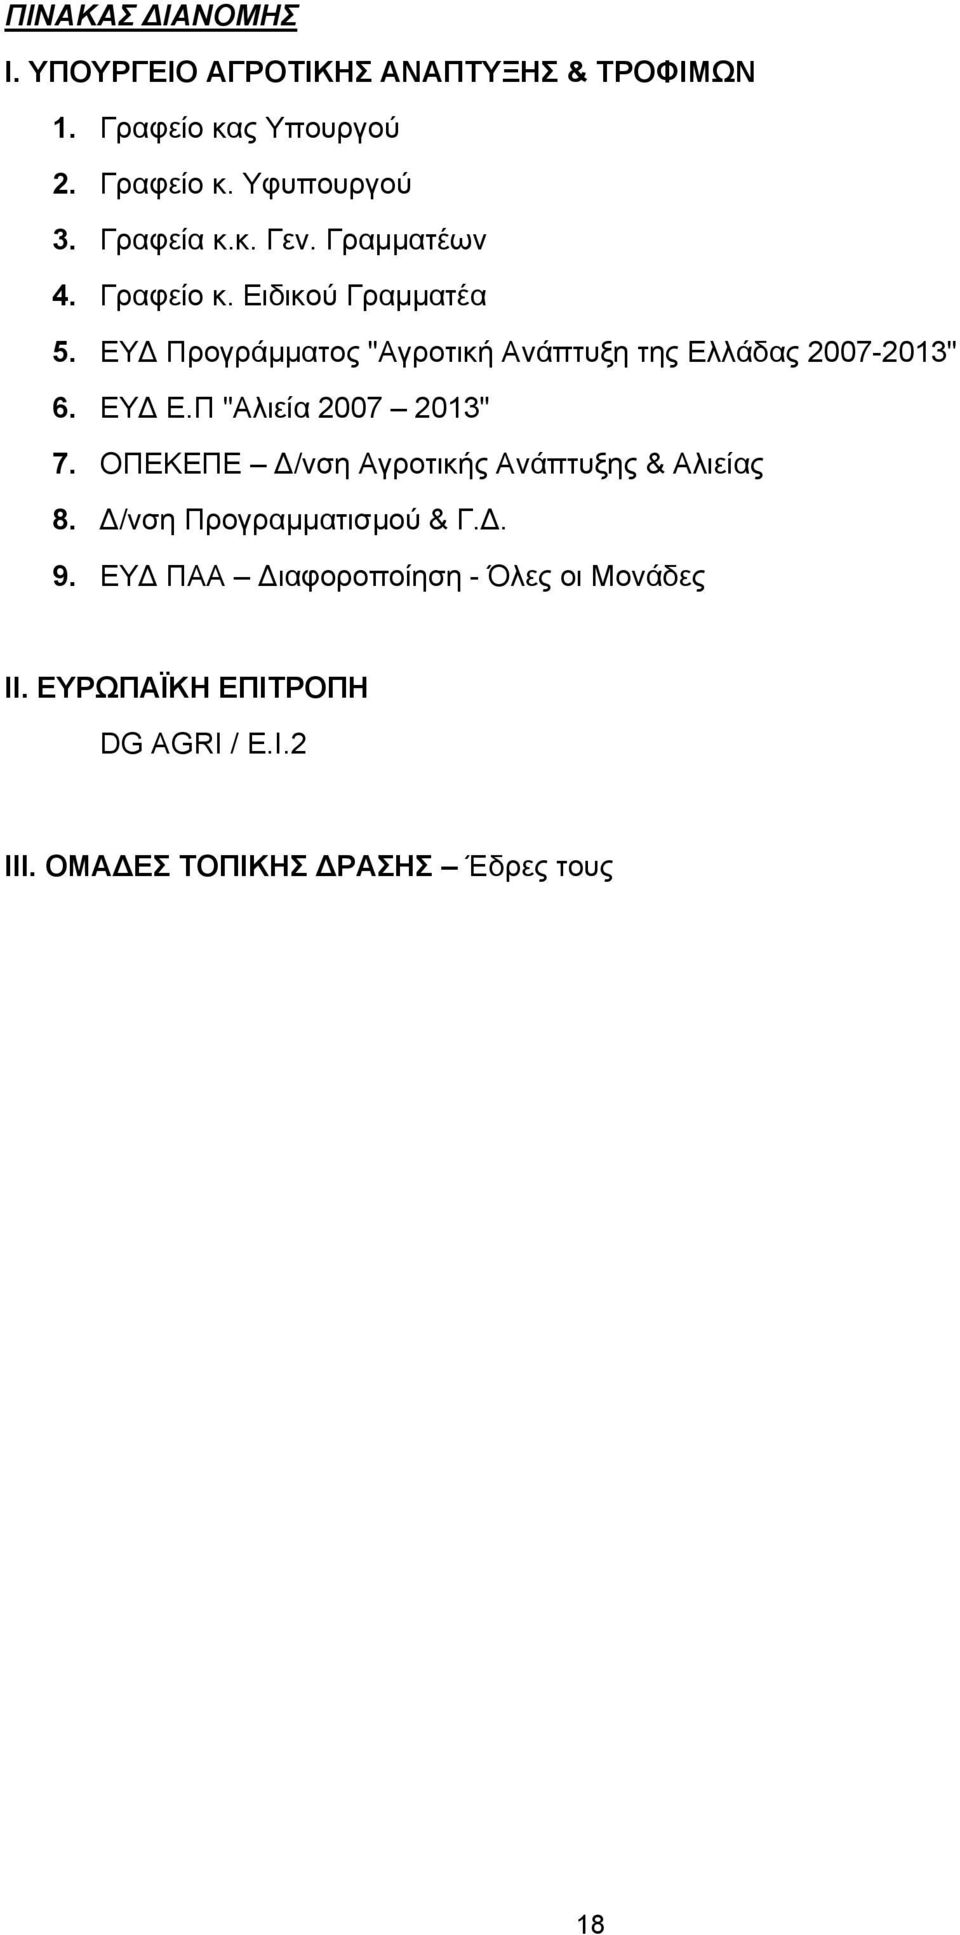 ΕΥ Προγράμματος "Αγροτική Ανάπτυξη της Ελλάδας 2007-2013" 6. ΕΥ Ε.Π "Αλιεία 2007 2013" 7.